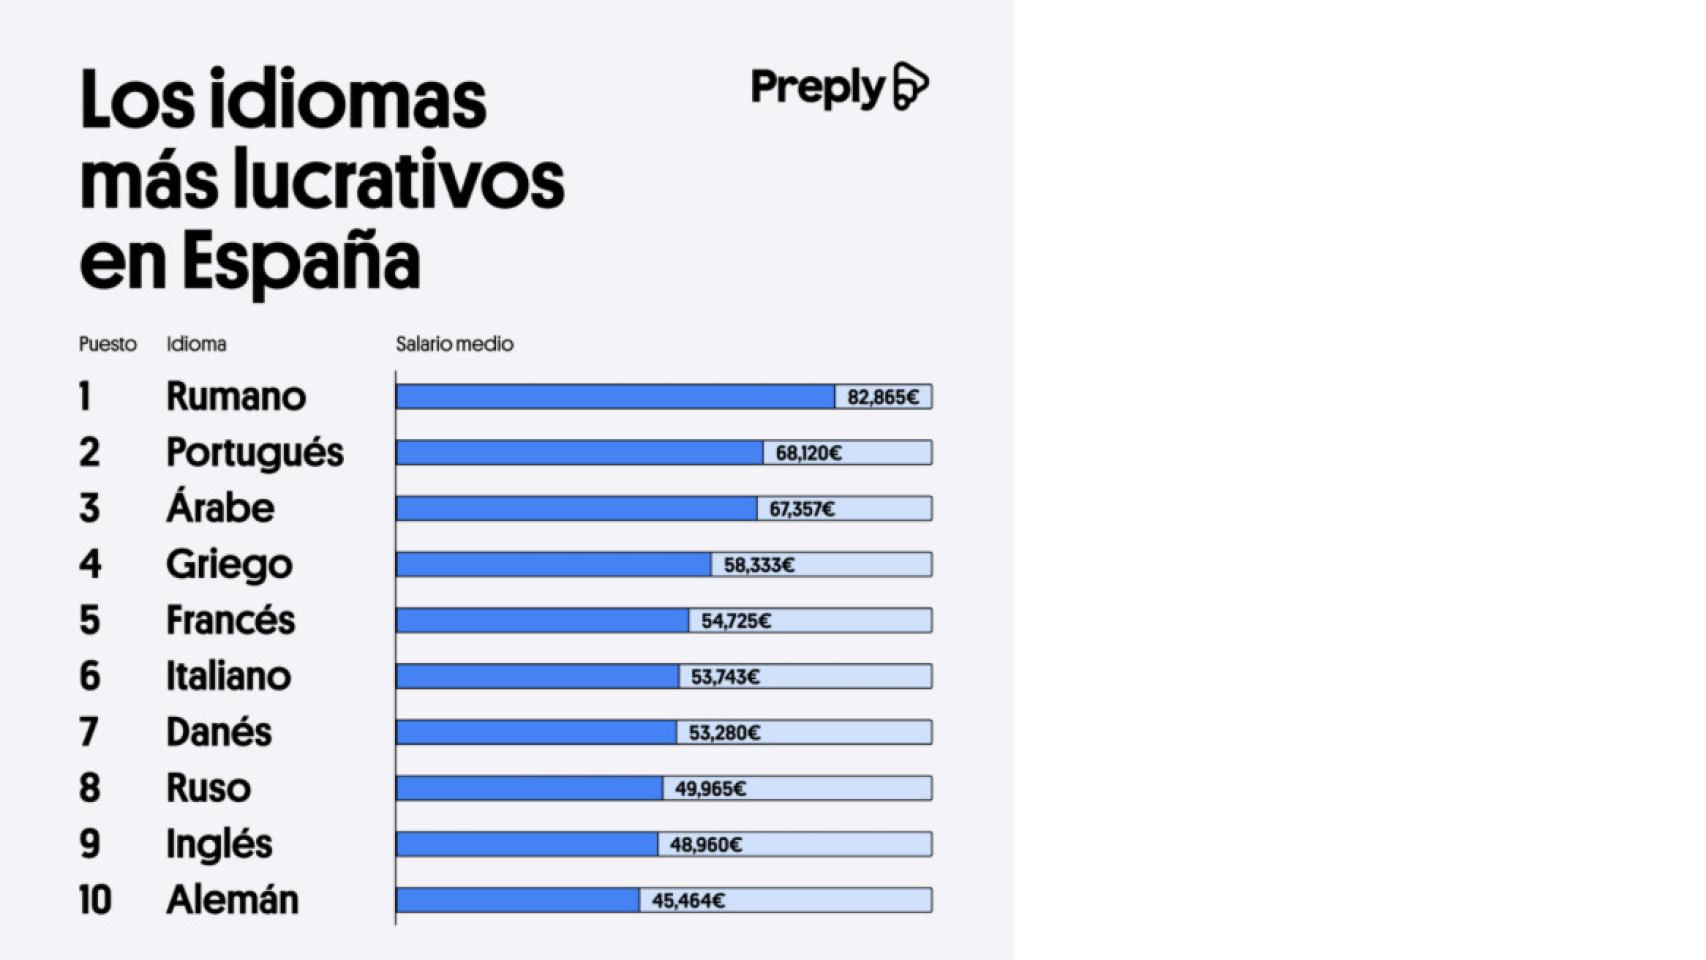 Los idiomas más lucrativos en España.